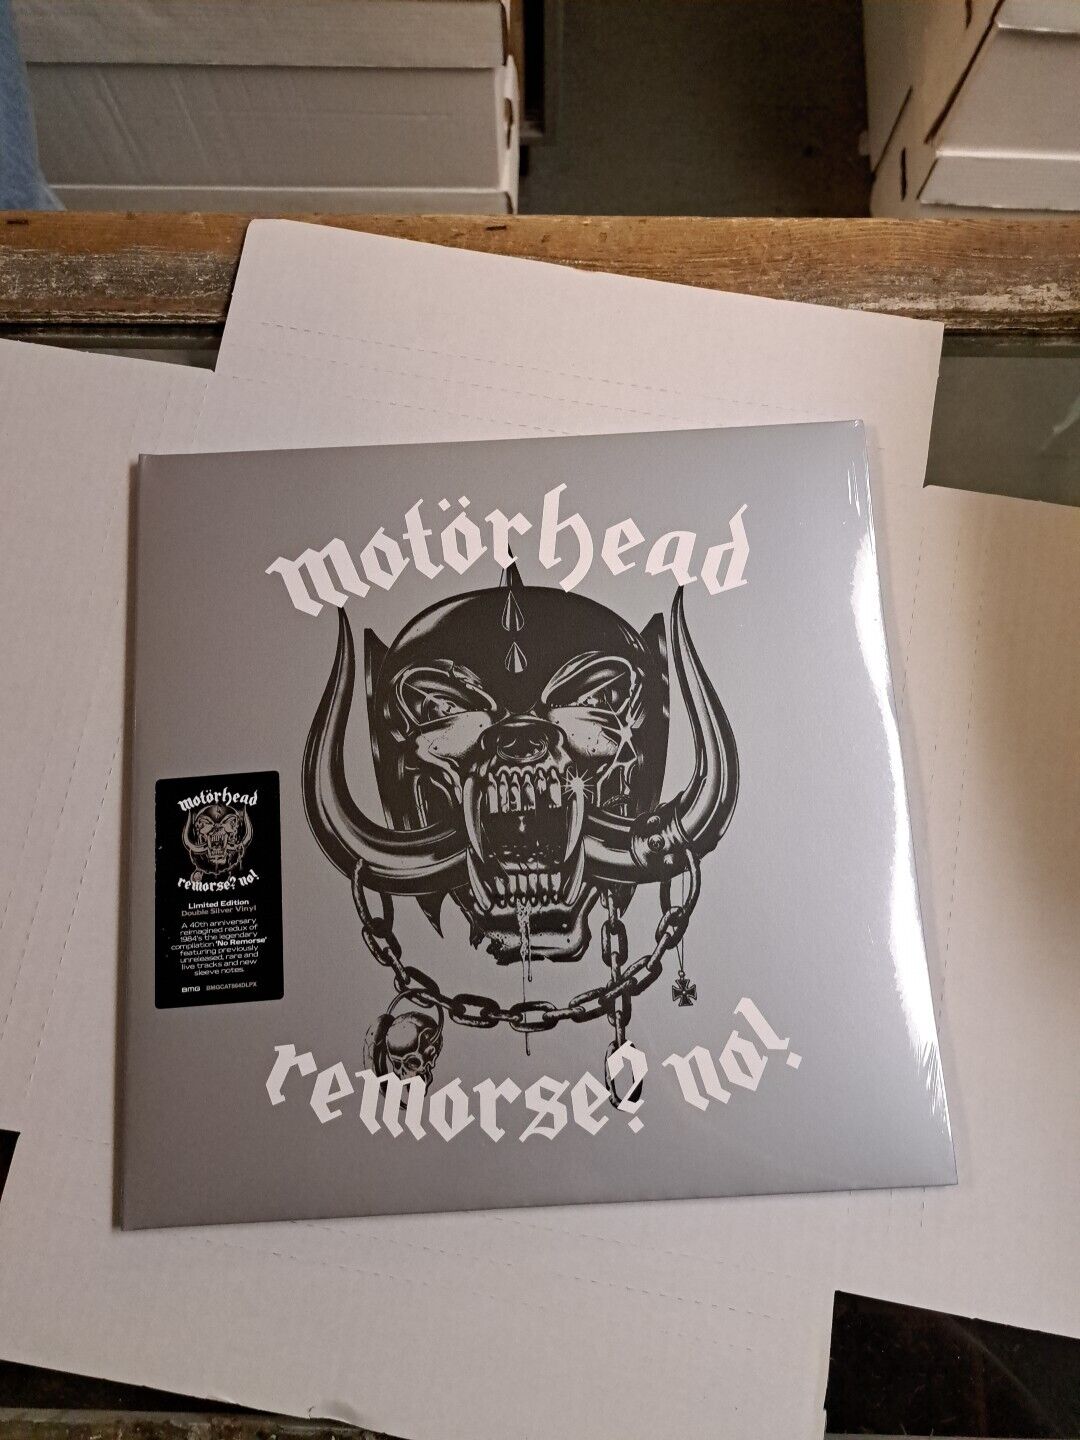 Motorhead Remorse? No 40th Anniversary RSD 2024 Record Store Day 2 LP Vinyl